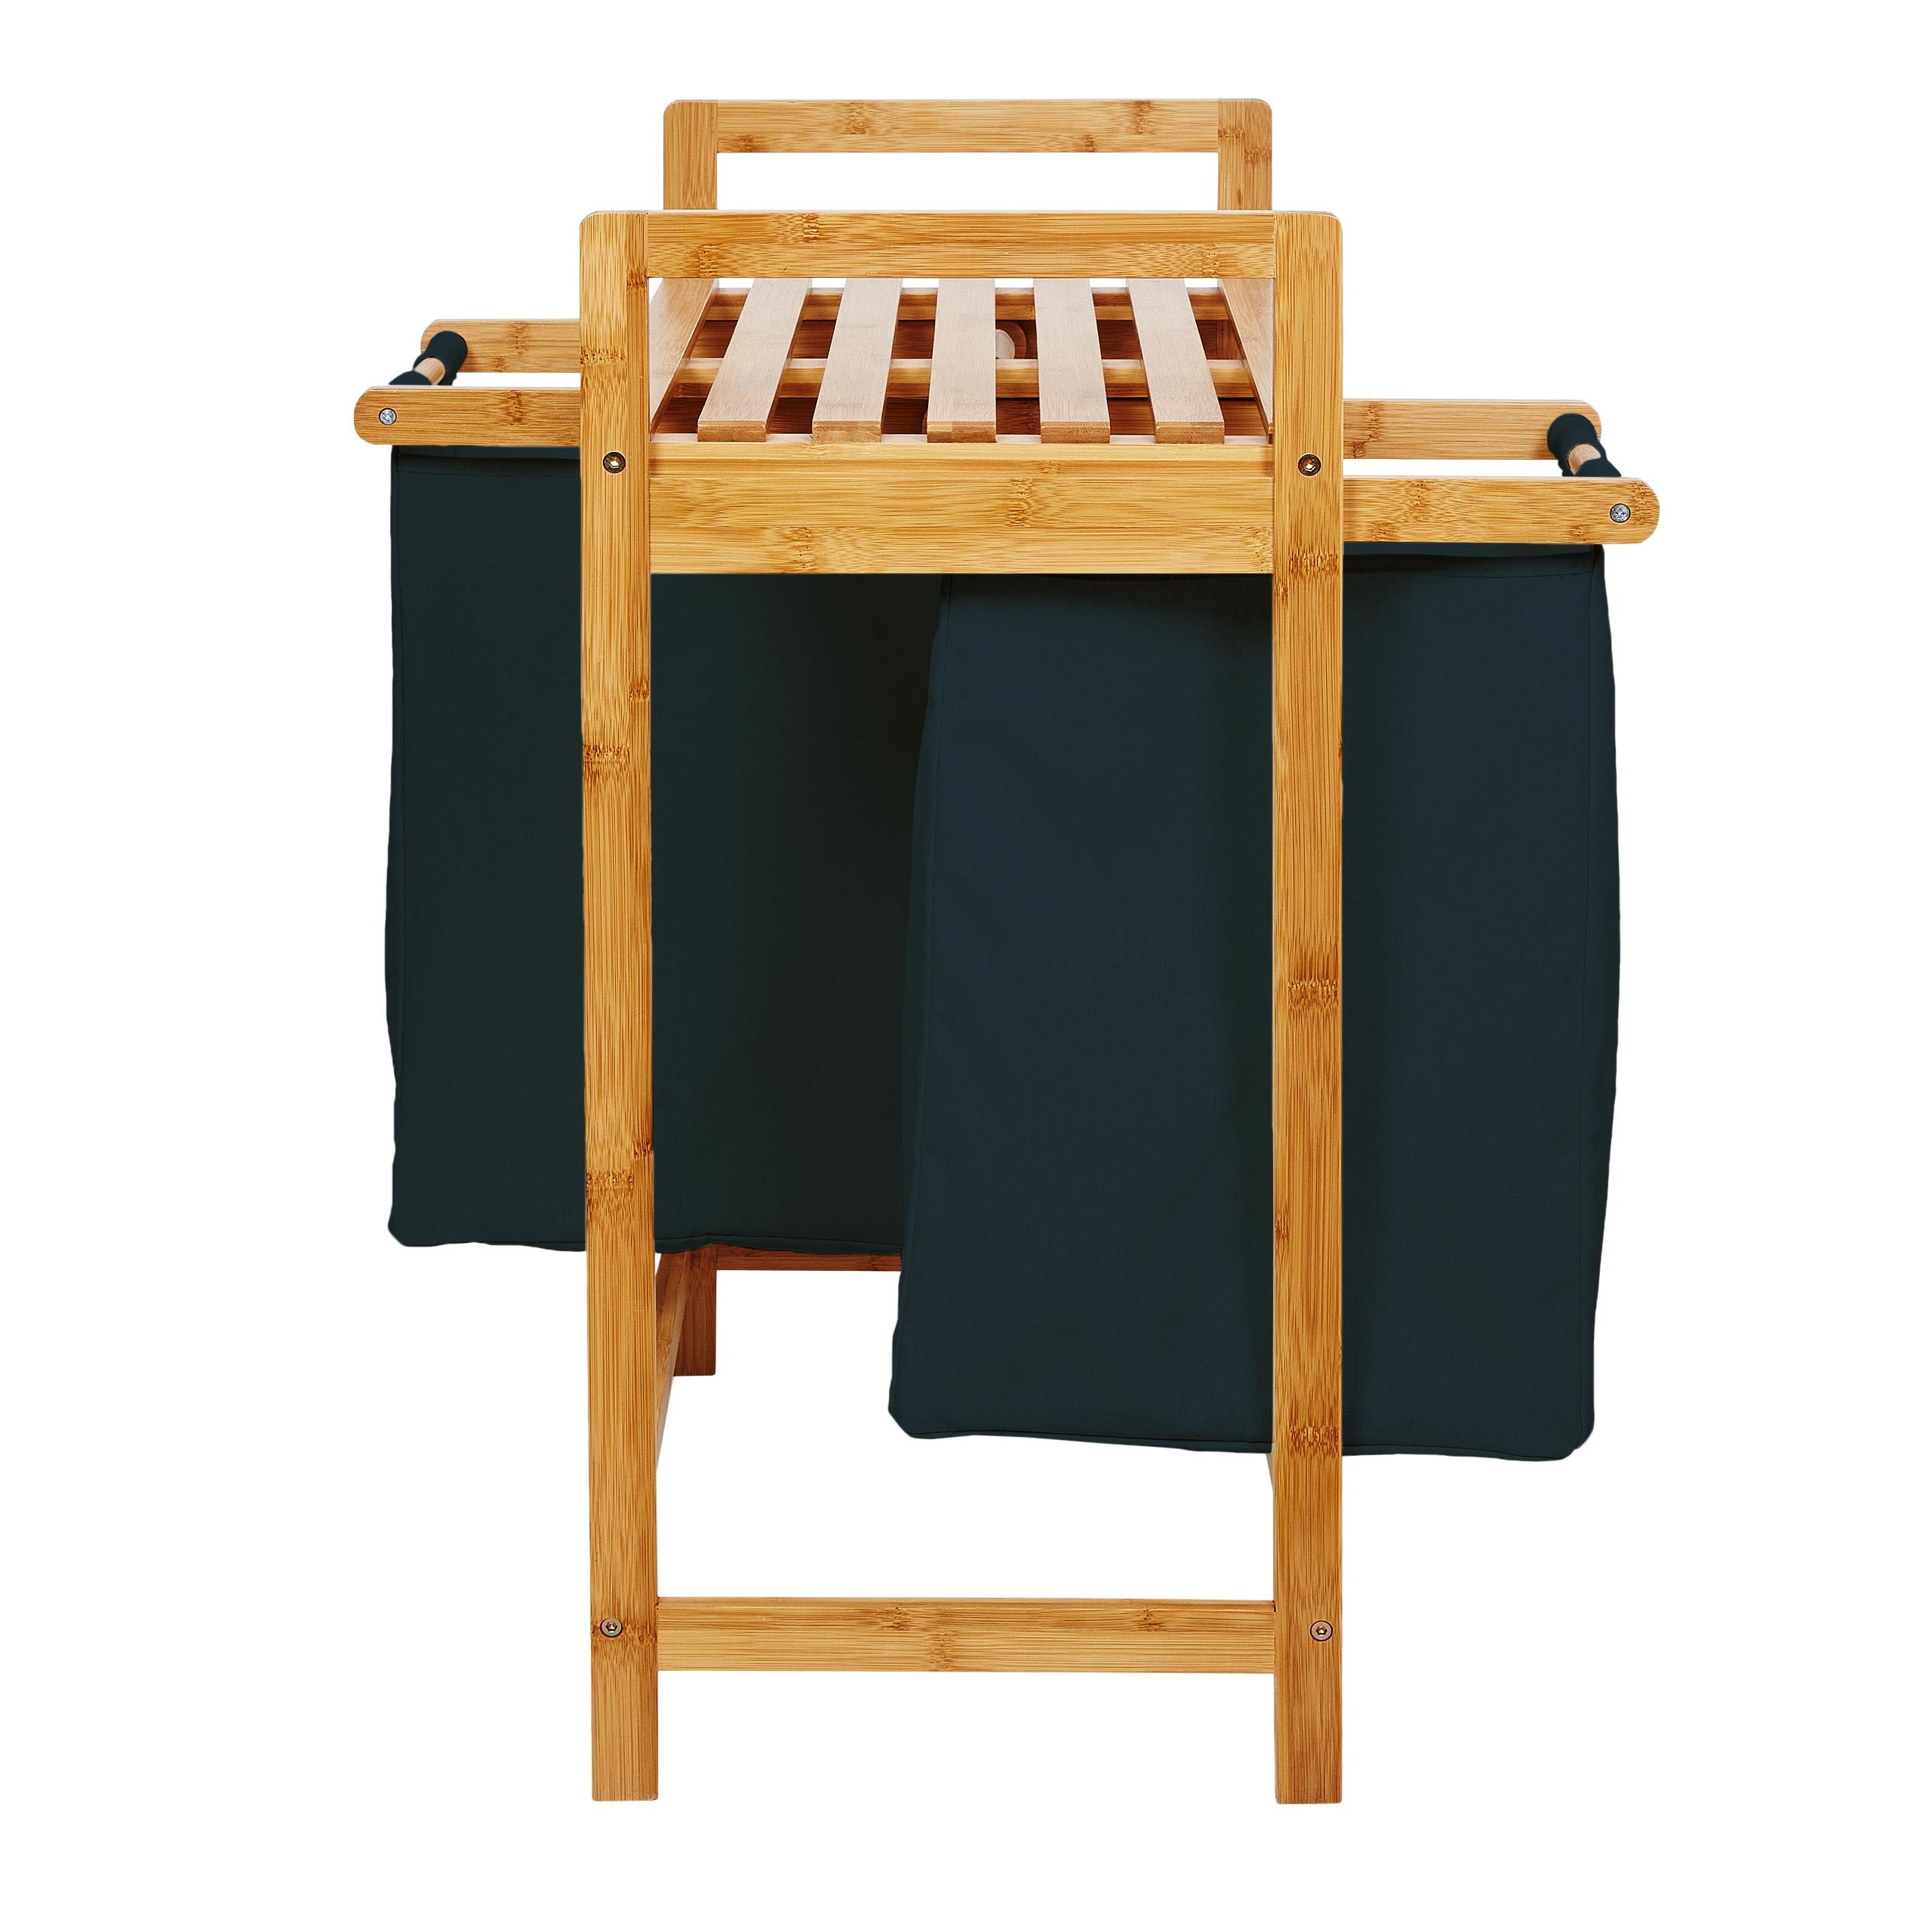 Bambus Wäschekorb mit 2 ausziehbaren Wäschesacken - 73 x 64 x 33 cm - Petrol